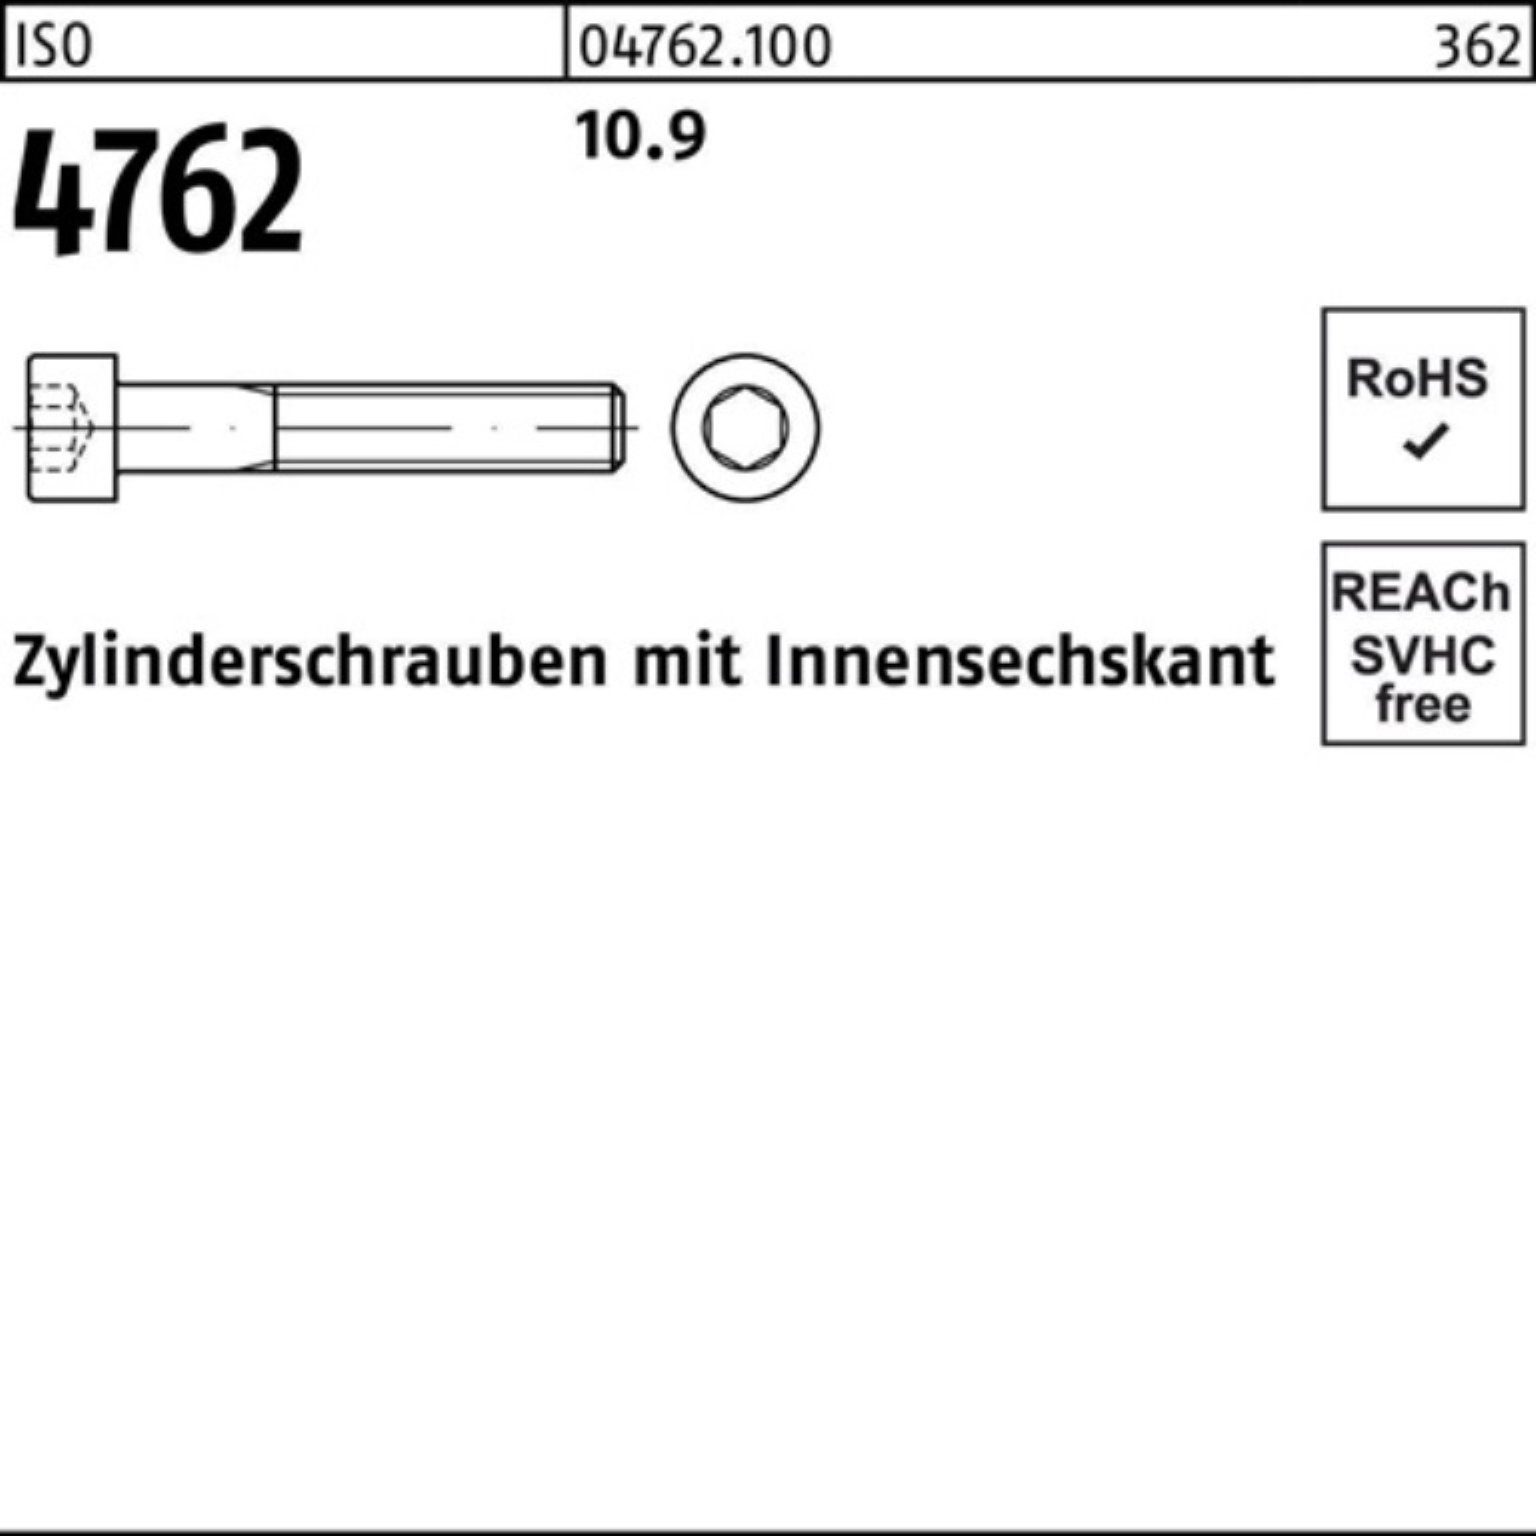 Stück Zylinderschraube Reyher ISO 10.9 Pack Zylinderschraube Innen-6kt 4762 1 190 M36x 100er